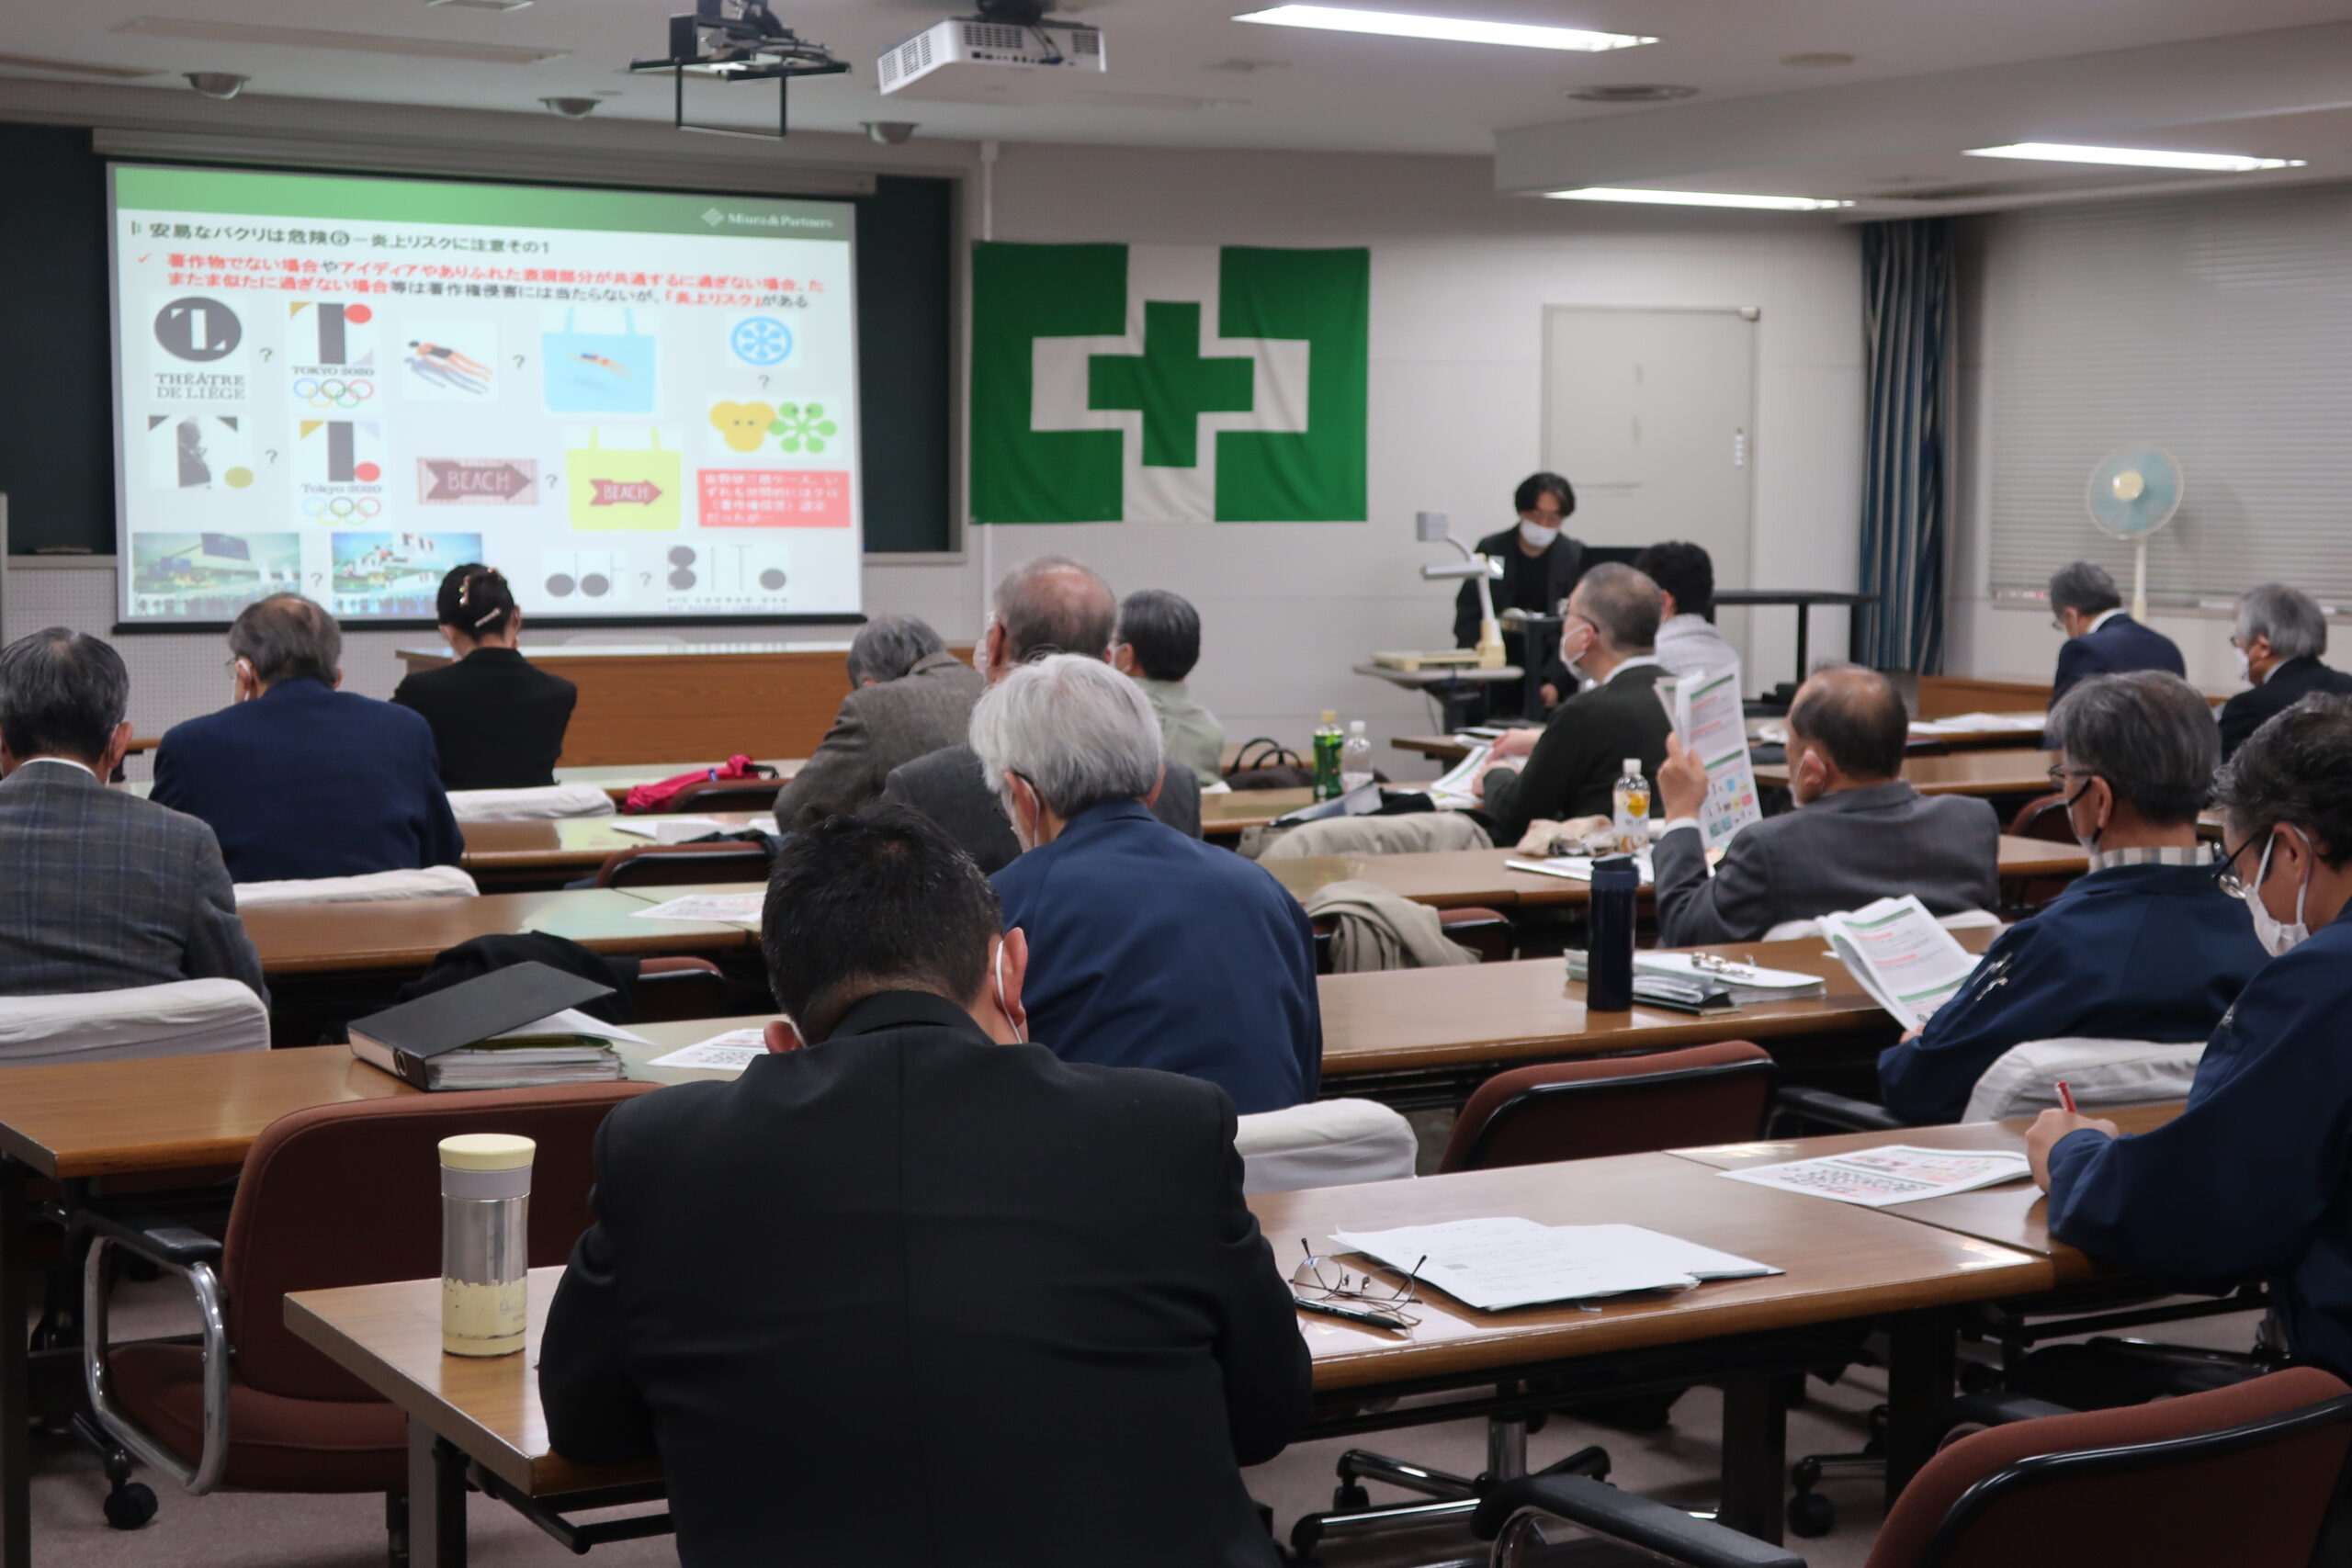 中央労働災害防止協会 大阪安全衛生教育センター主催の講座「講義における教材利用と著作権」が開催されました